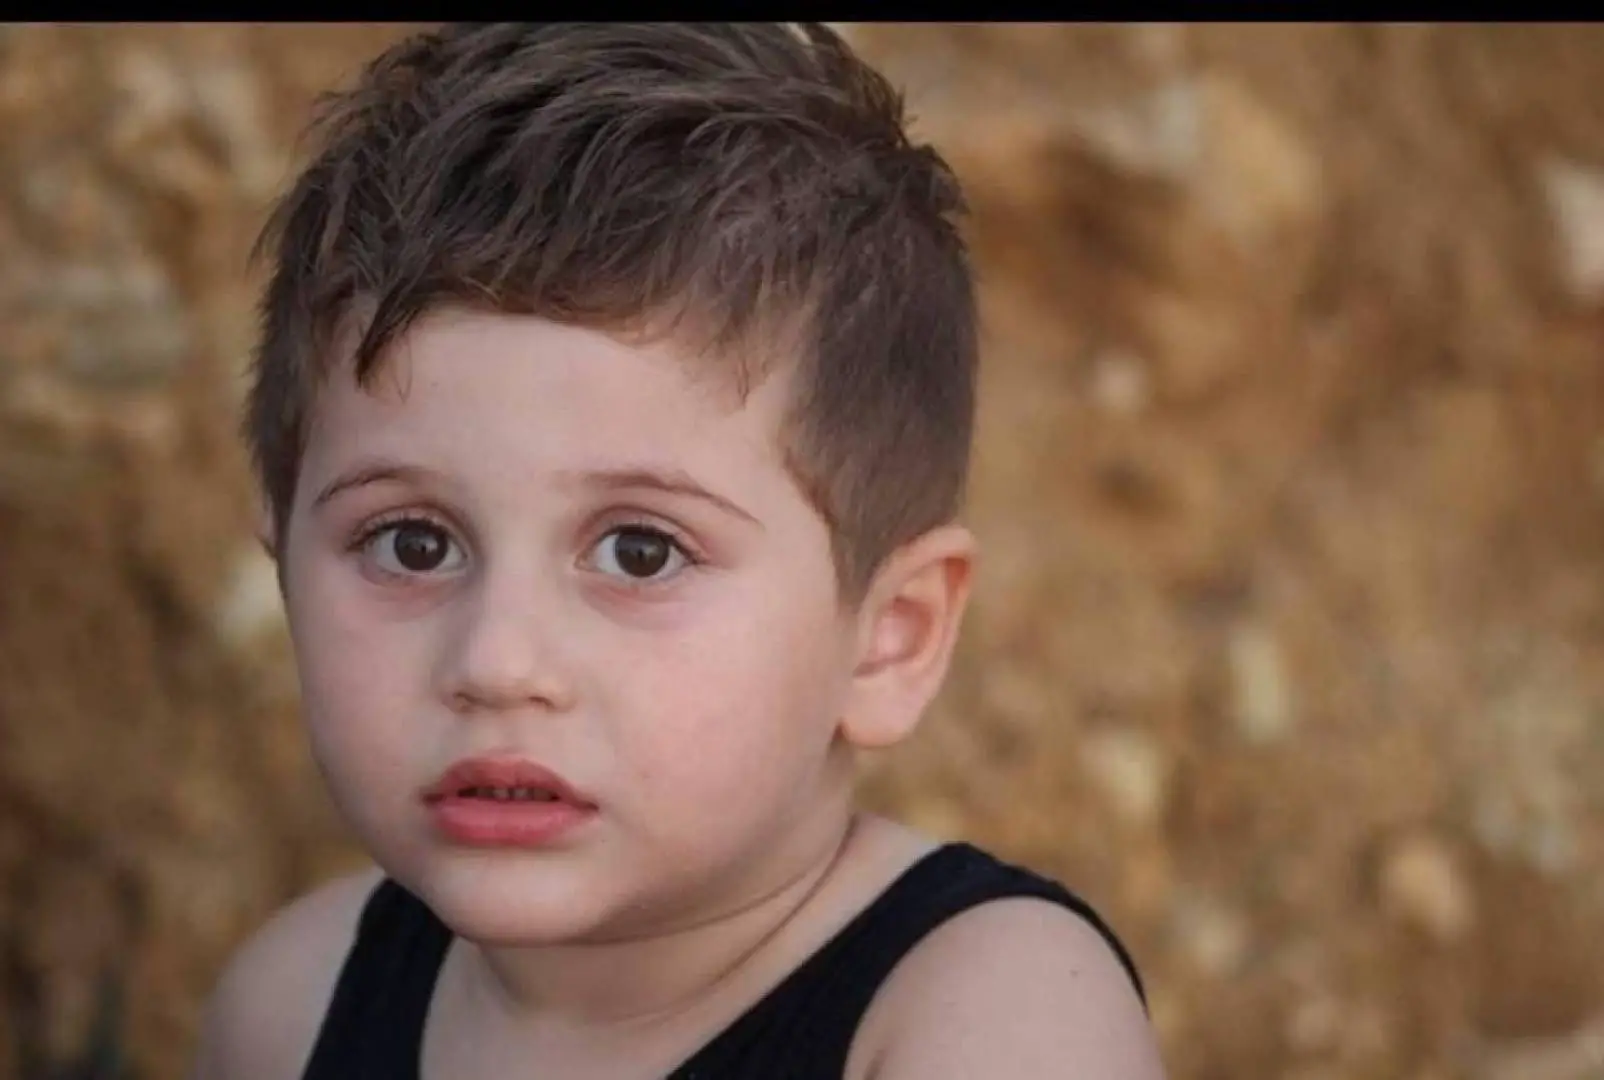 الطفل محمد علي زهرة ابن بلدة شبعا الذي كتب عليه في أن يسجل اسمه بالدم على لائحة الموت على طرق لبنان